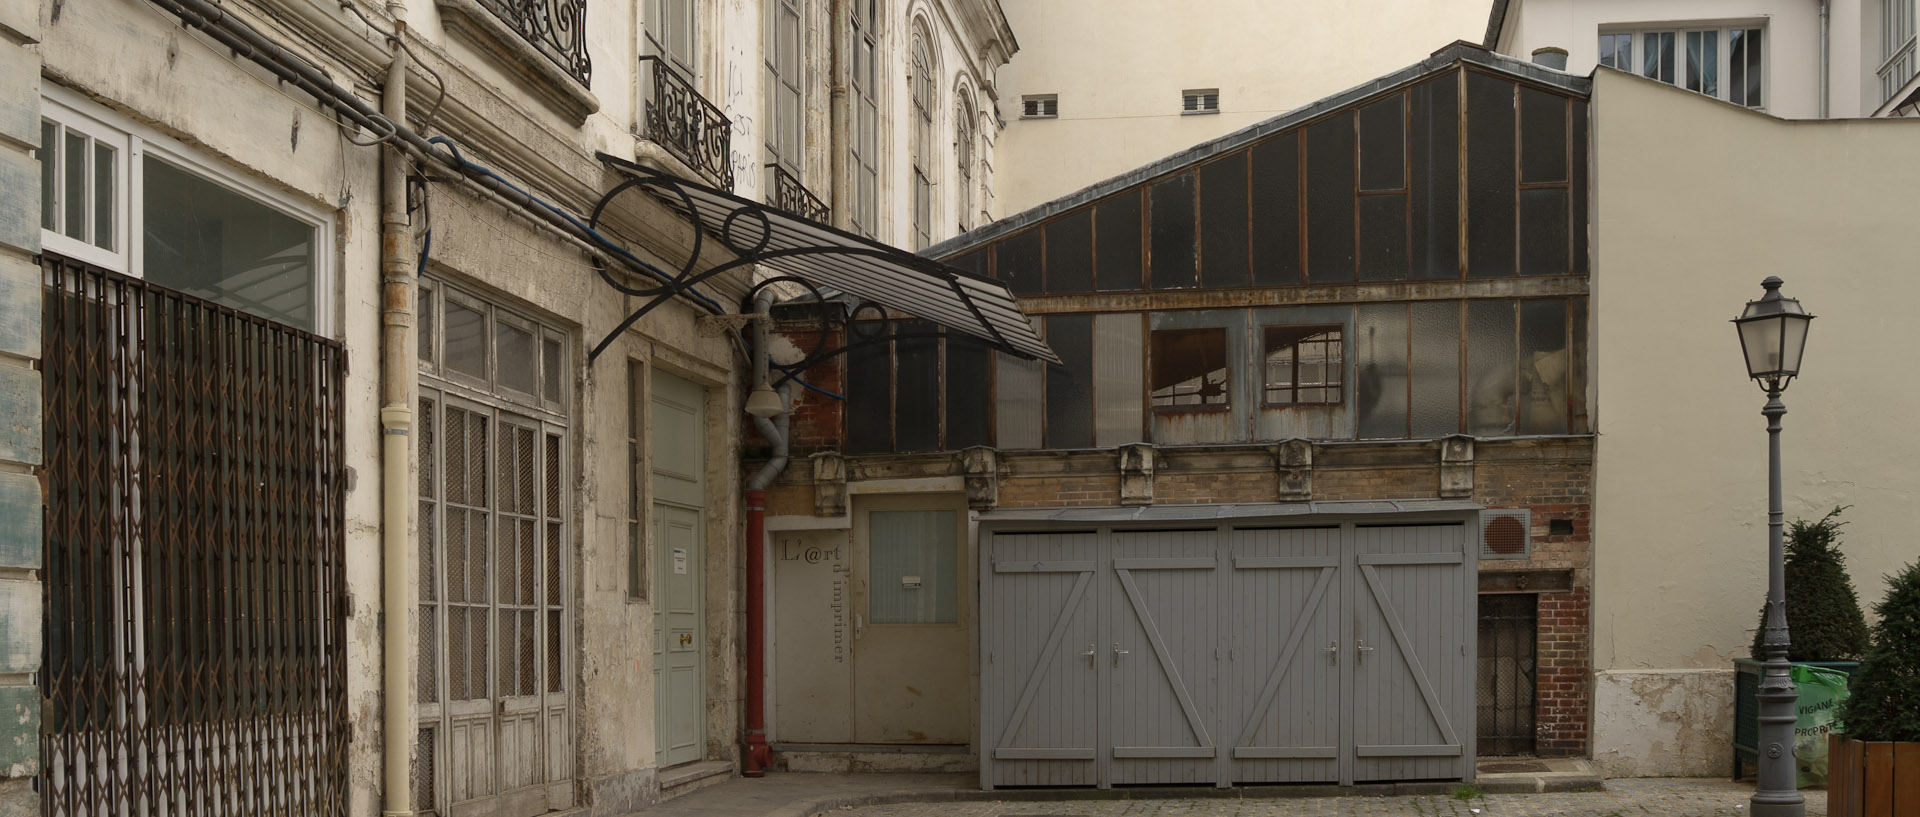 Cour, rue Cadet, à Paris.